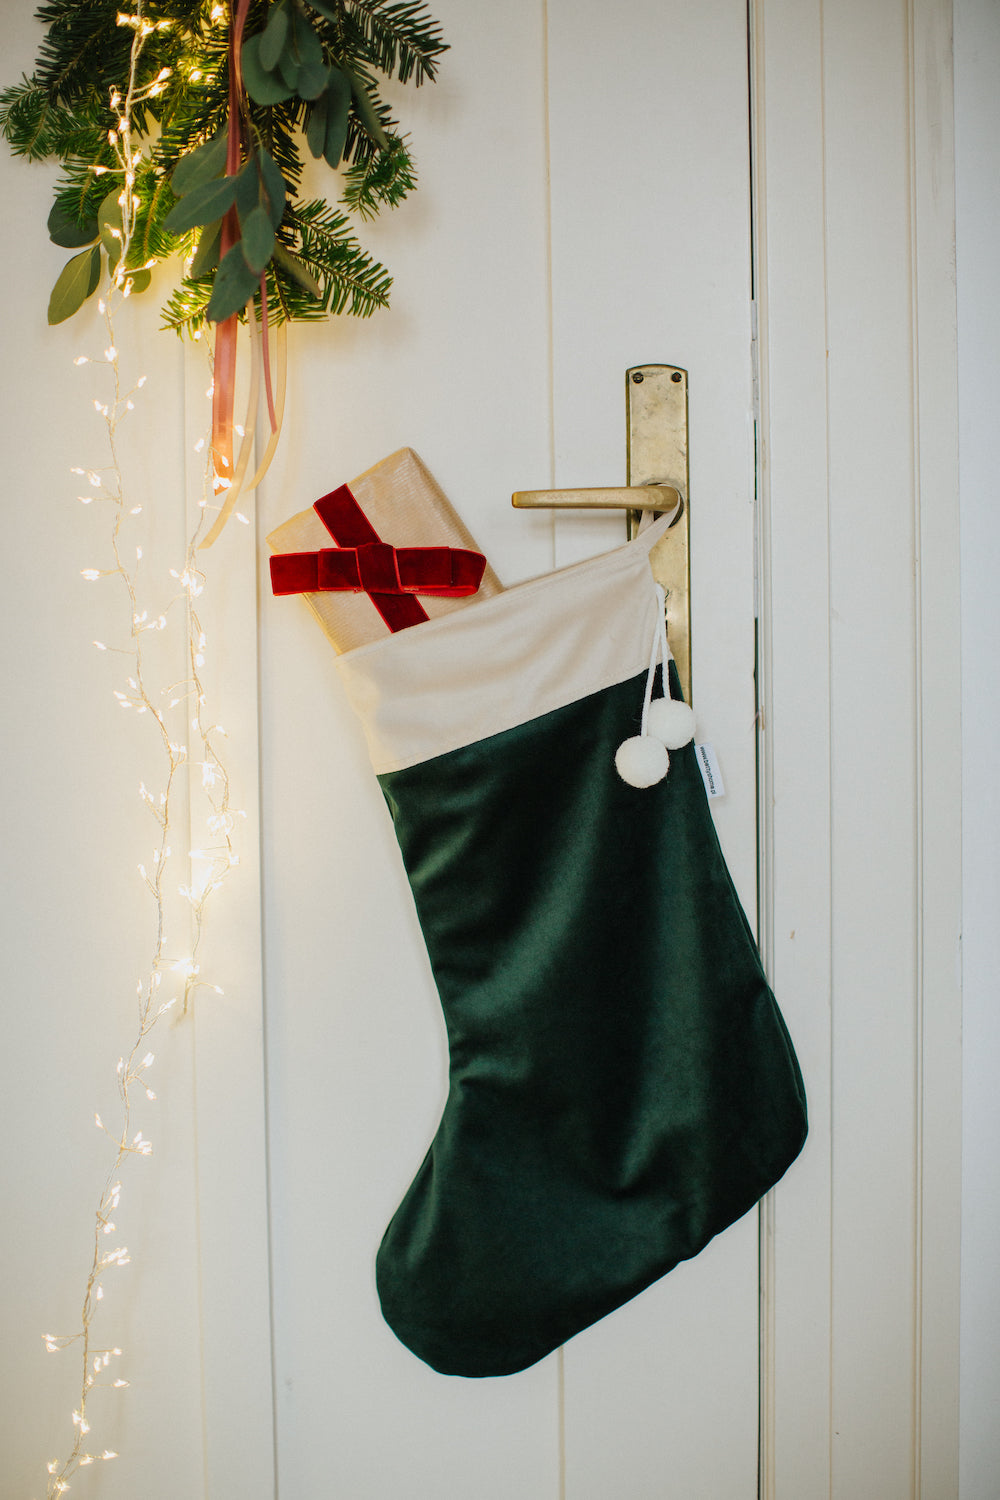 świąteczna skarpeta zielona welurowa od Bettys Home wisząca na drzwiach dekoracja świąteczna na okno